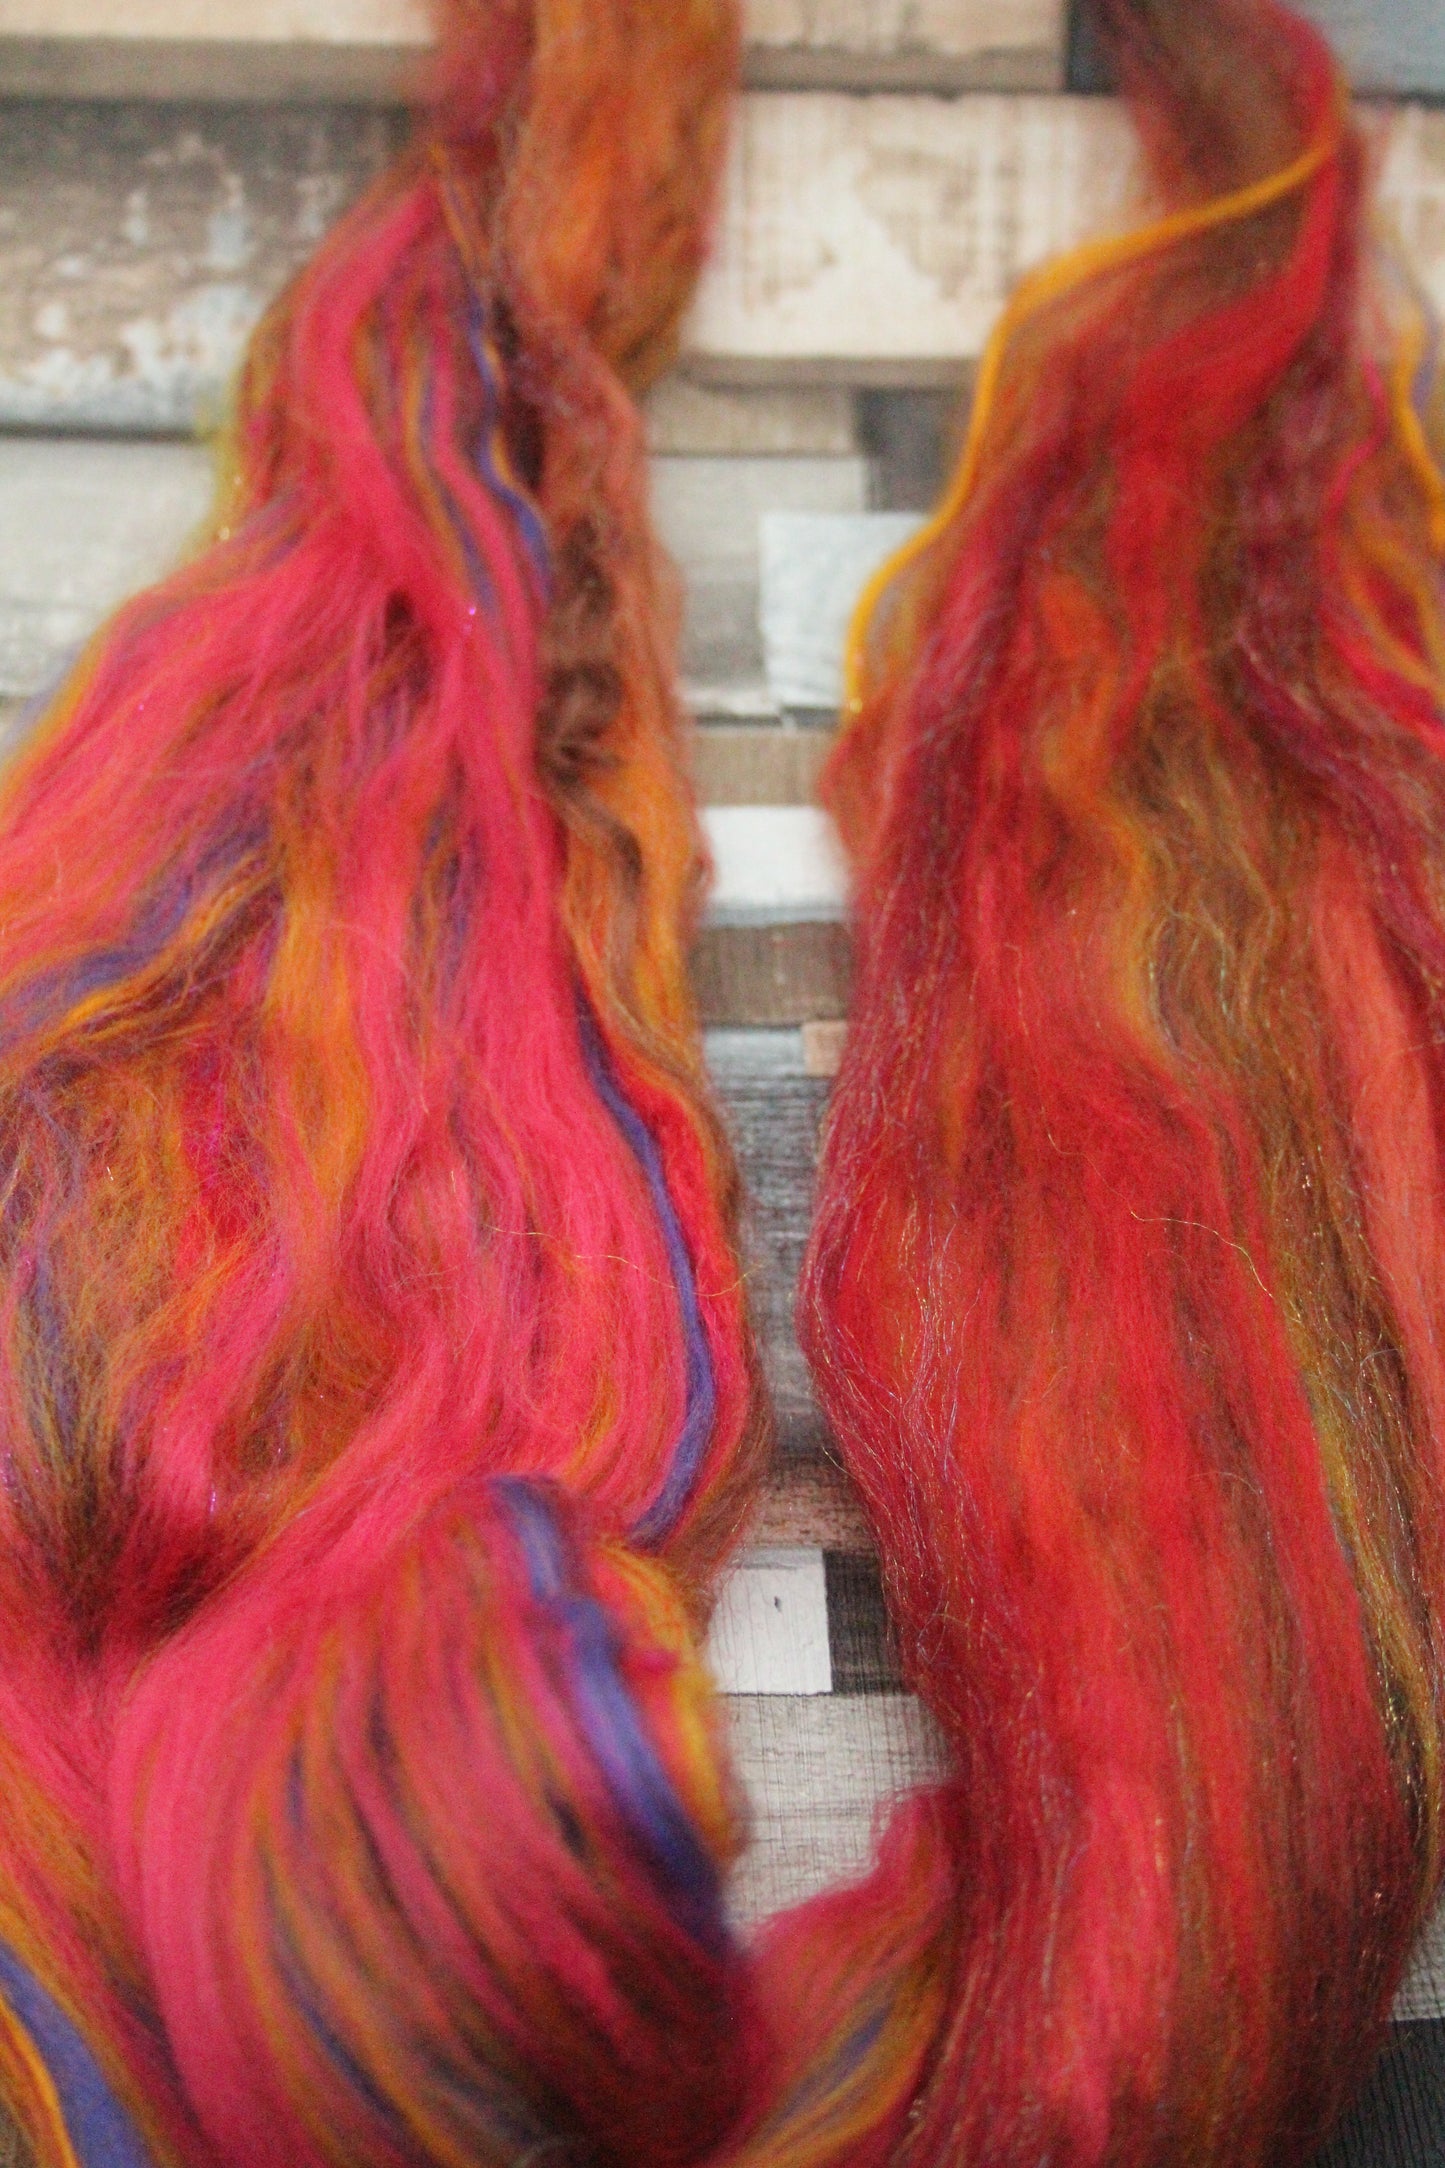 Merino Wool Blend - Red Brown Orange - 22 grams / 0.7 oz  - Fibre for felting, weaving or spinning